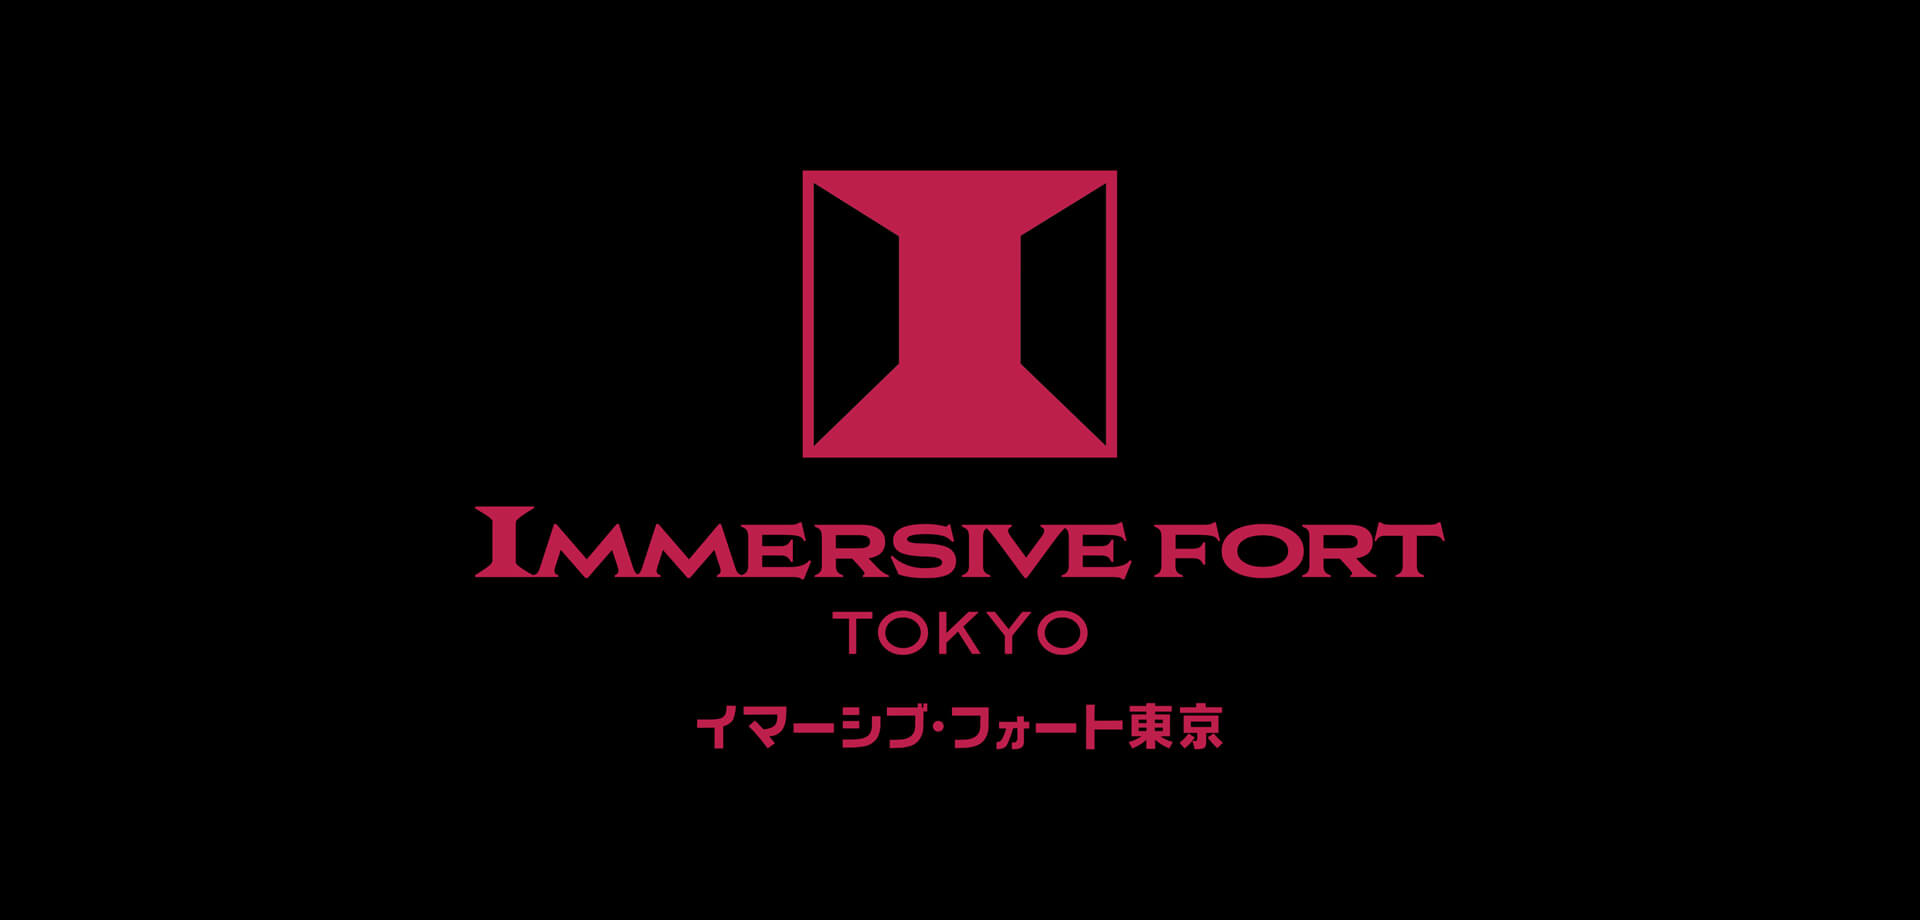 イマーシブ・フォート東京ロゴ